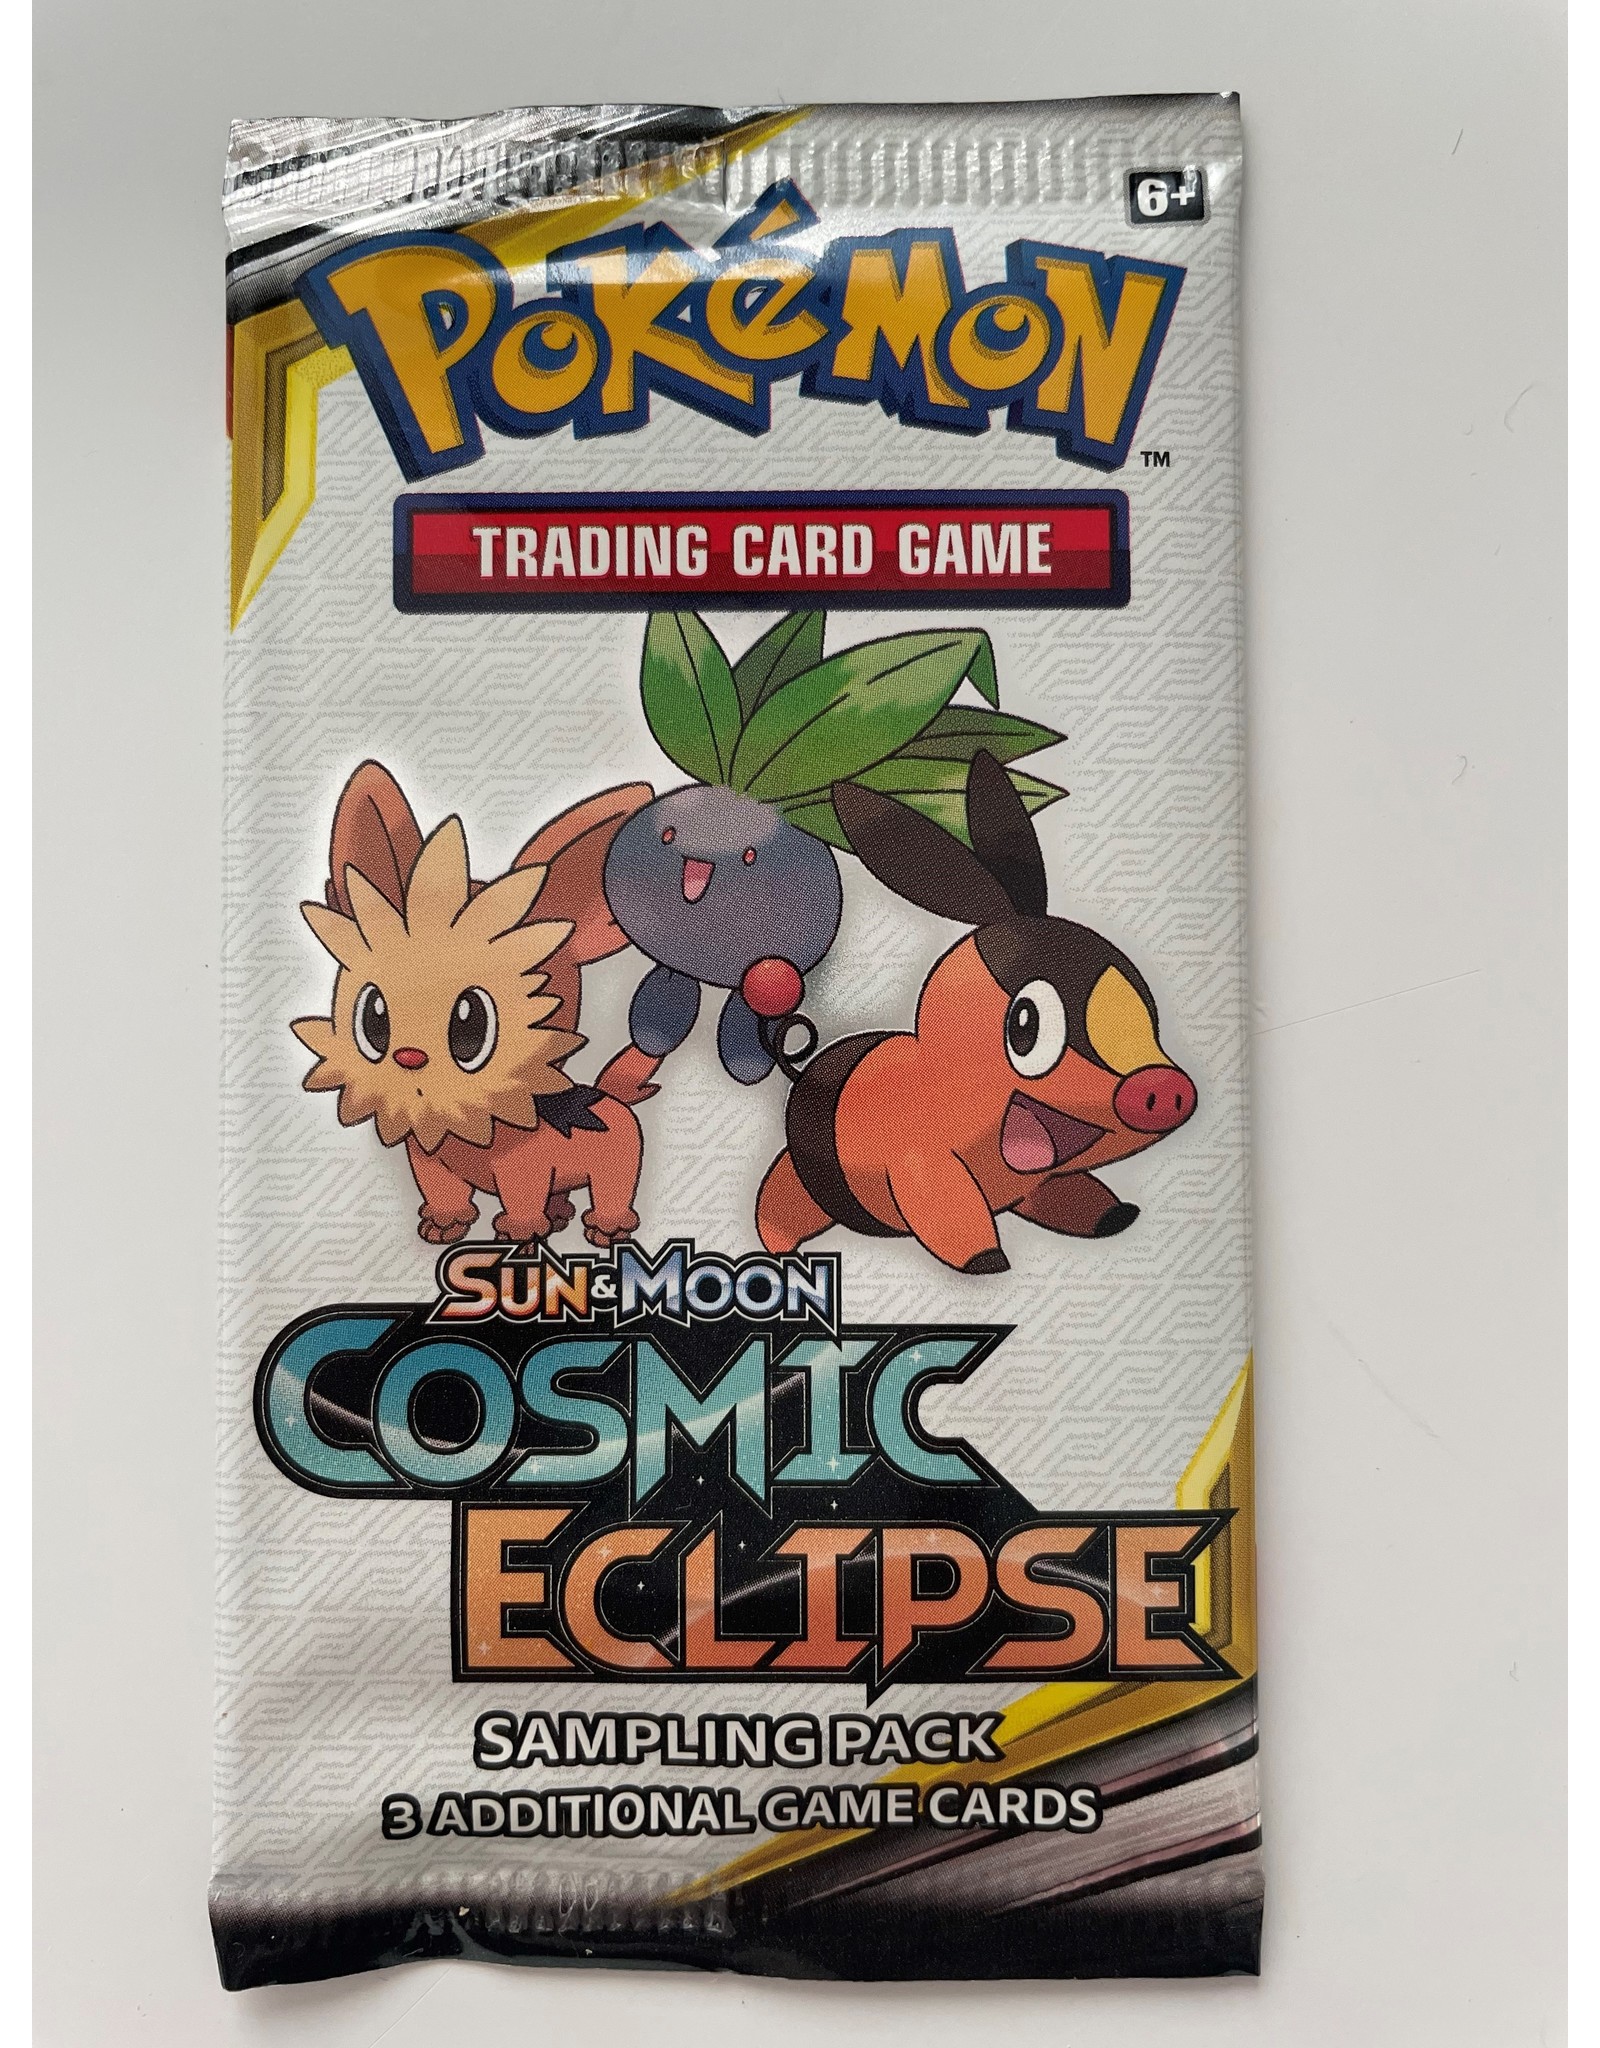 BRAND NEW SEALED BOOSTER PACKS & SAMPLING SAMPLE TCG Pokemon Cards 